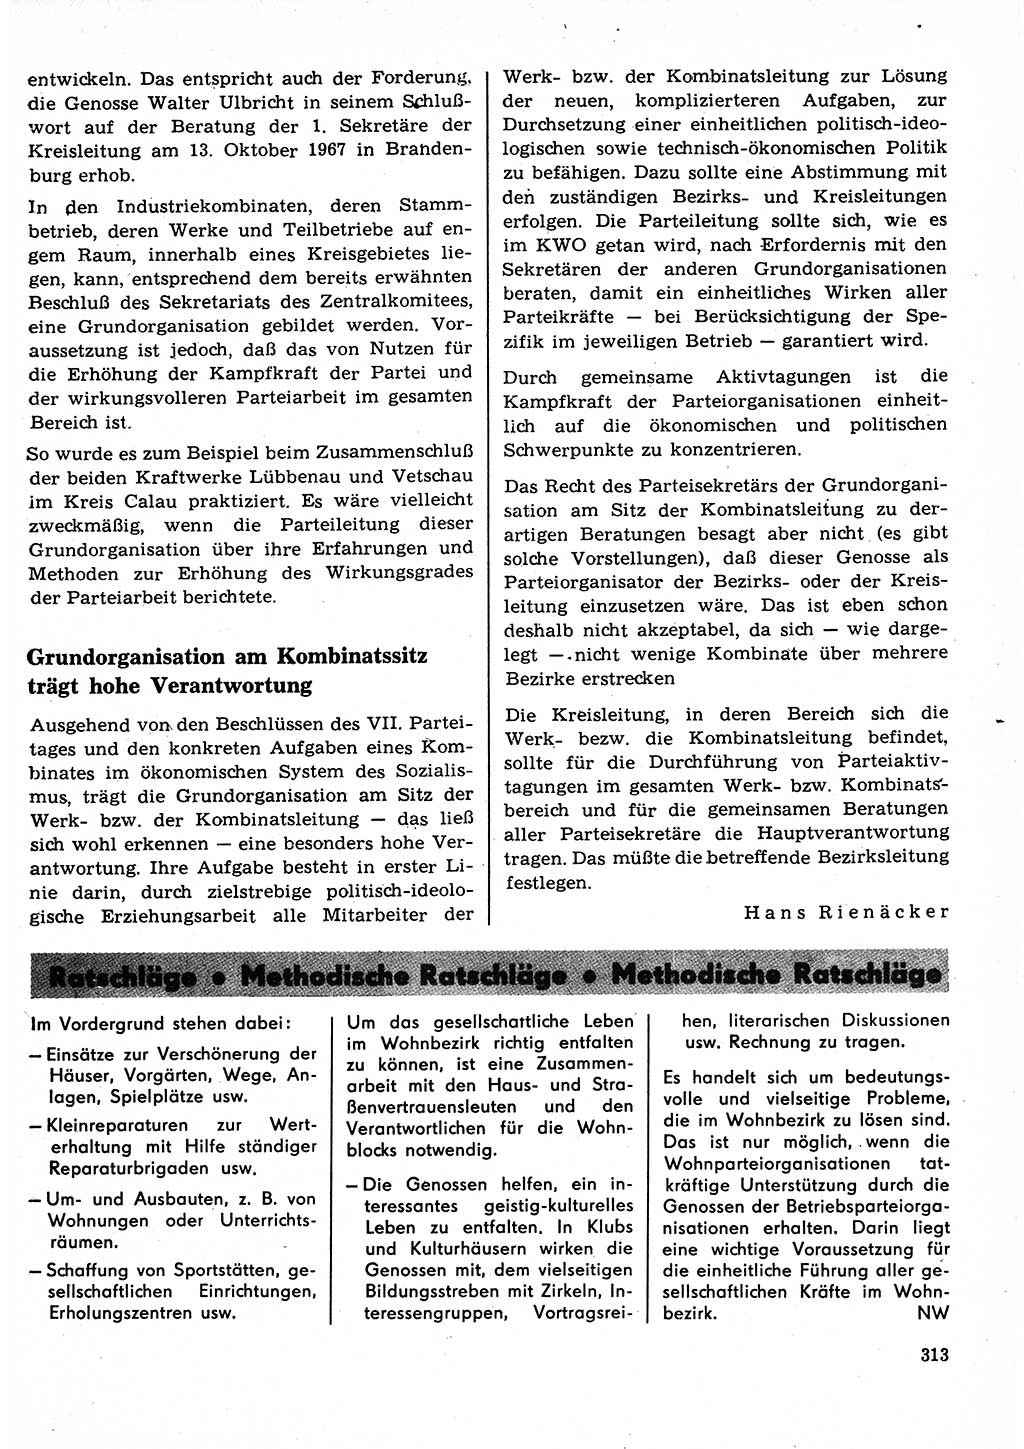 Neuer Weg (NW), Organ des Zentralkomitees (ZK) der SED (Sozialistische Einheitspartei Deutschlands) für Fragen des Parteilebens, 23. Jahrgang [Deutsche Demokratische Republik (DDR)] 1968, Seite 313 (NW ZK SED DDR 1968, S. 313)